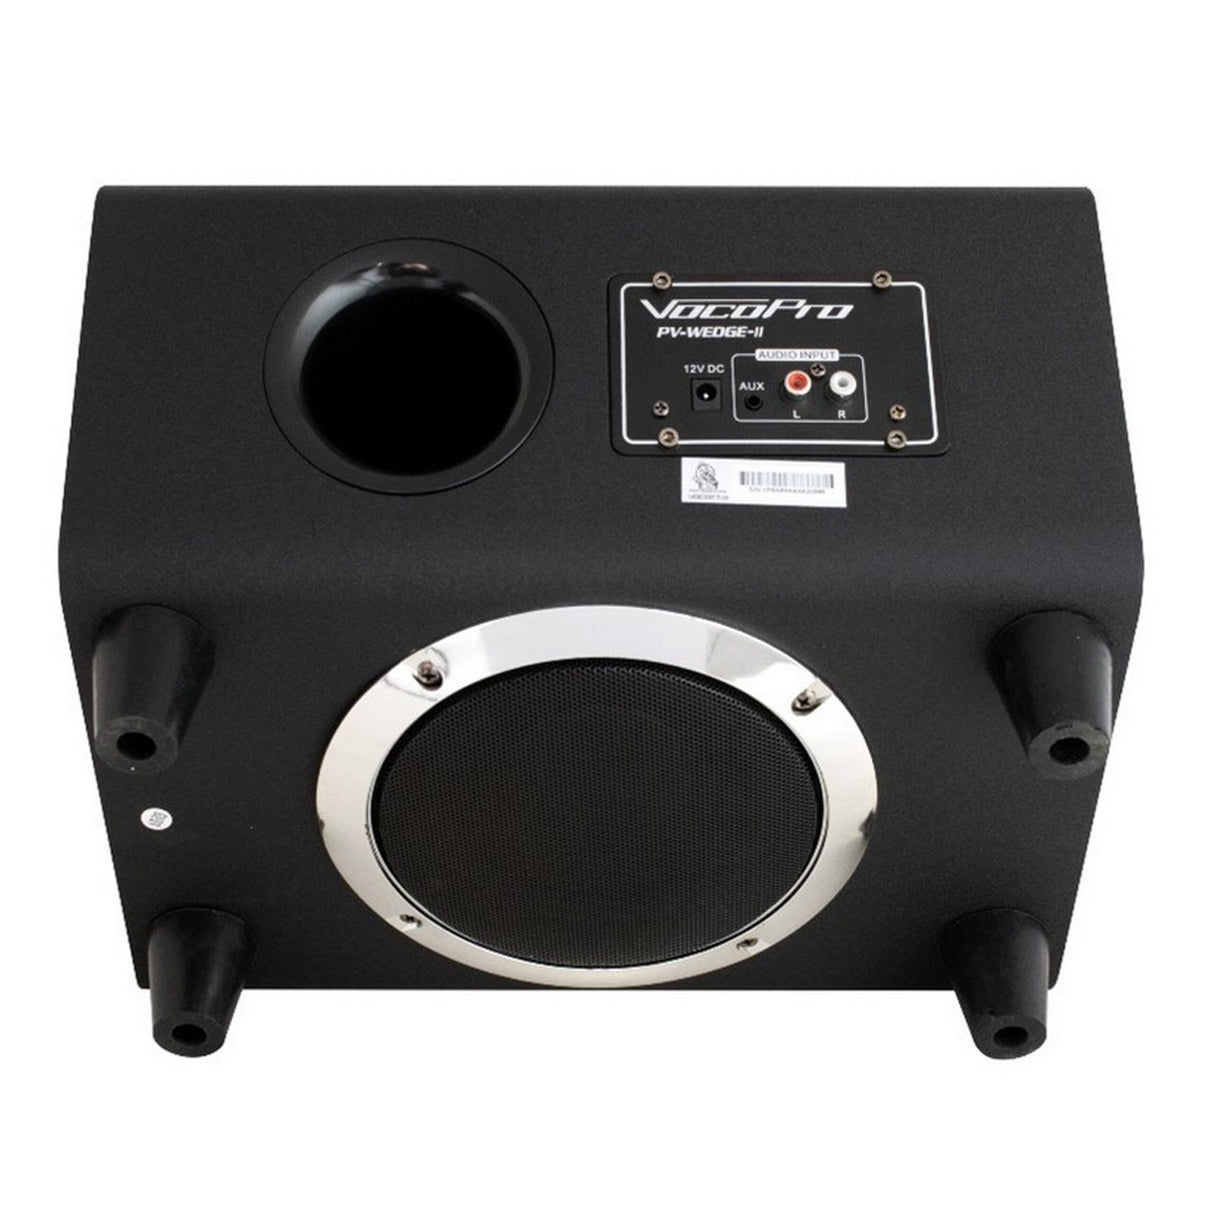 VocoPro Streamer Live-Pro 100-Watt Karaoke Recording/Streaming Package